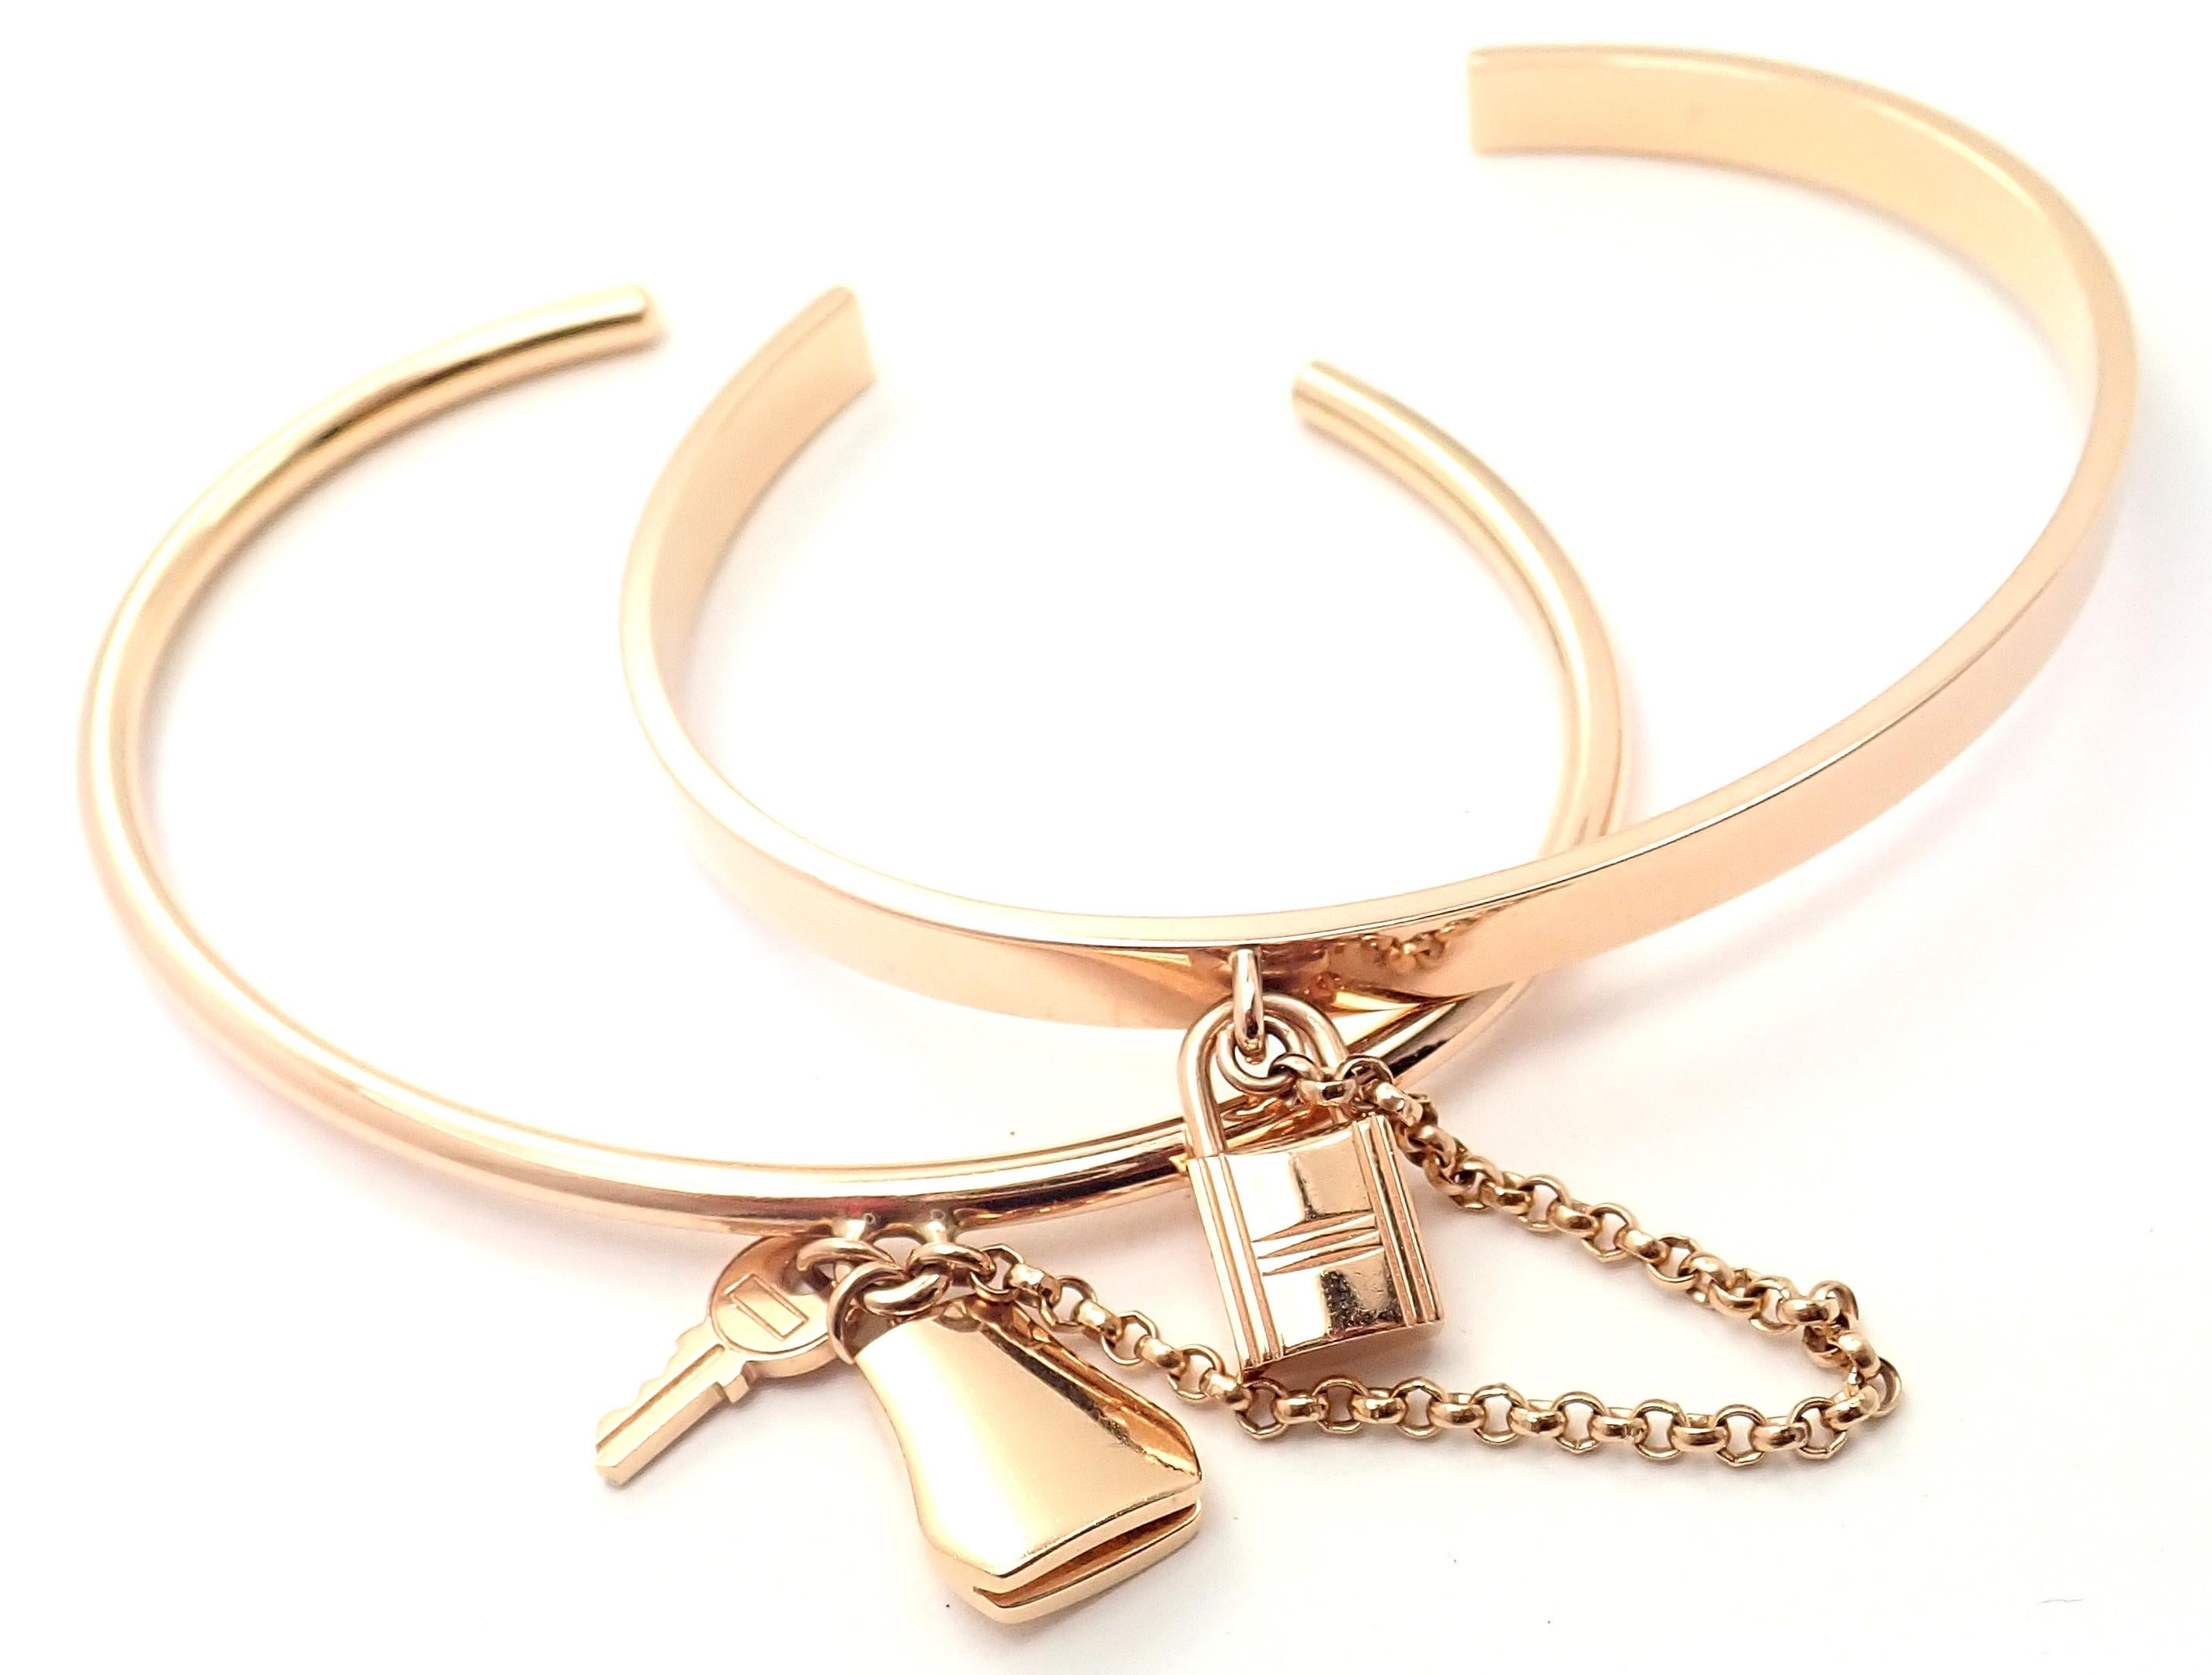 18k Gelbgold Kelly Clochette Double Cuff Armreif Armband von Hermes.
Einzelheiten:
Gewicht: 30,3 Gramm
Länge: 6